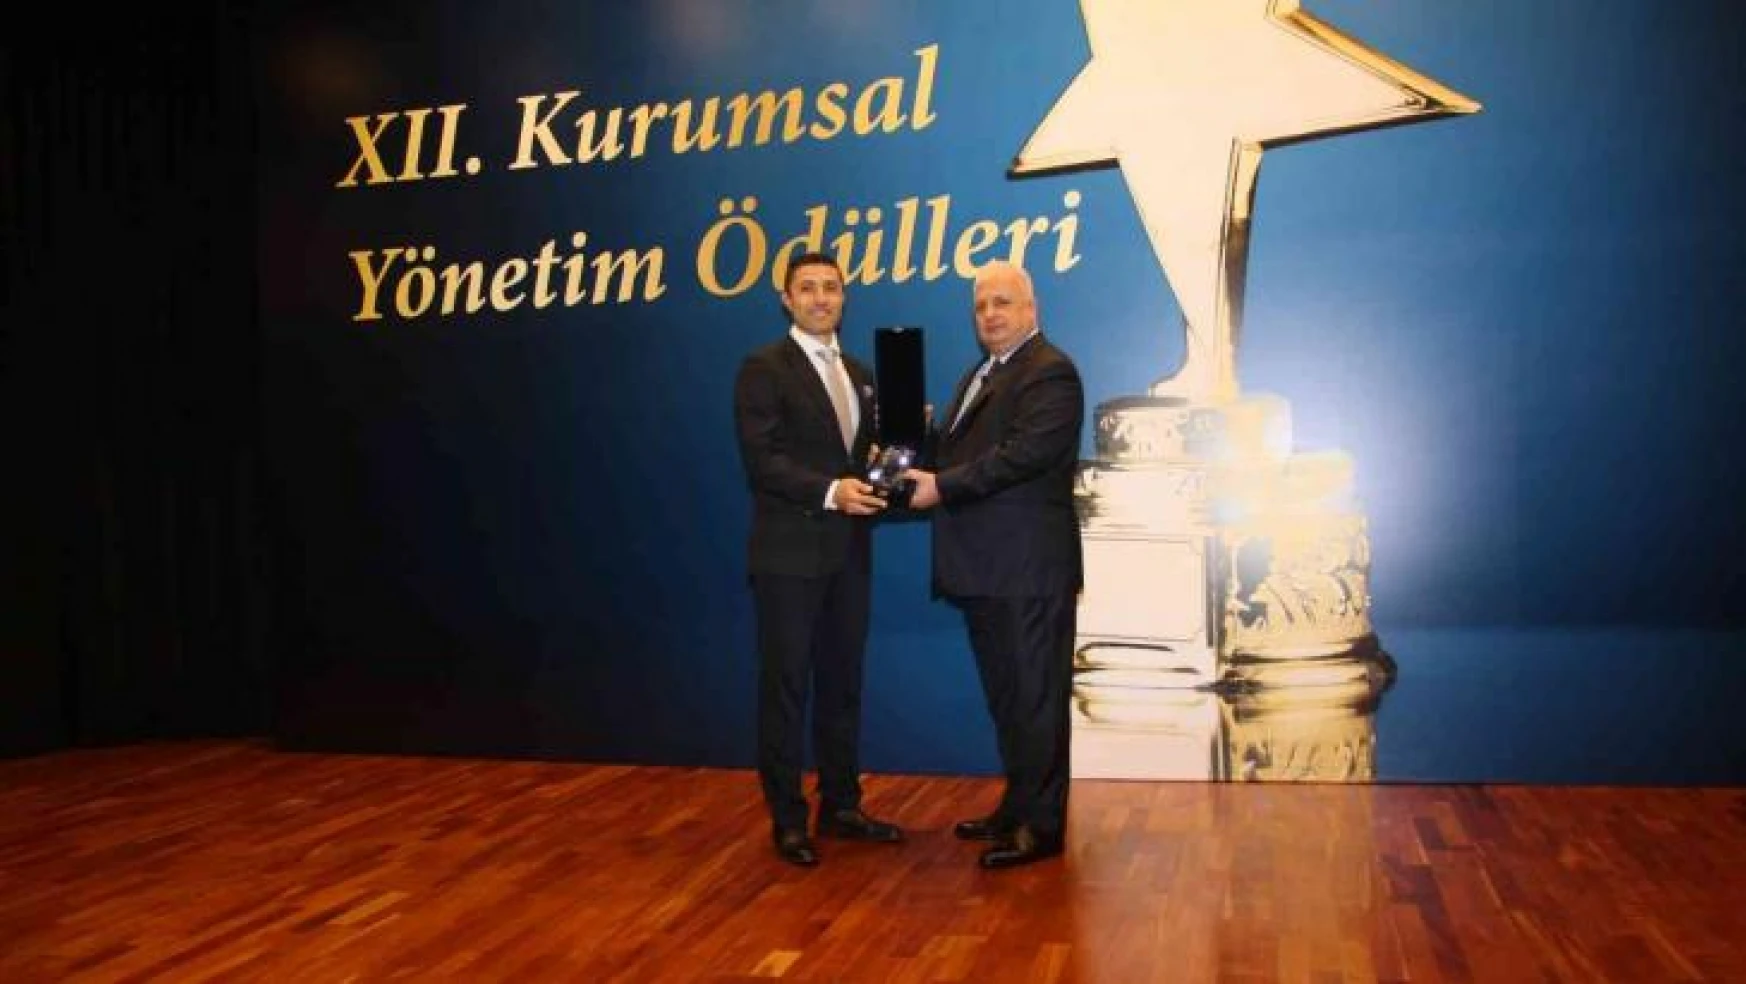 Aksa Akrilik'e Kurumsal Yönetim Ödülleri'nde 7'nci ödül